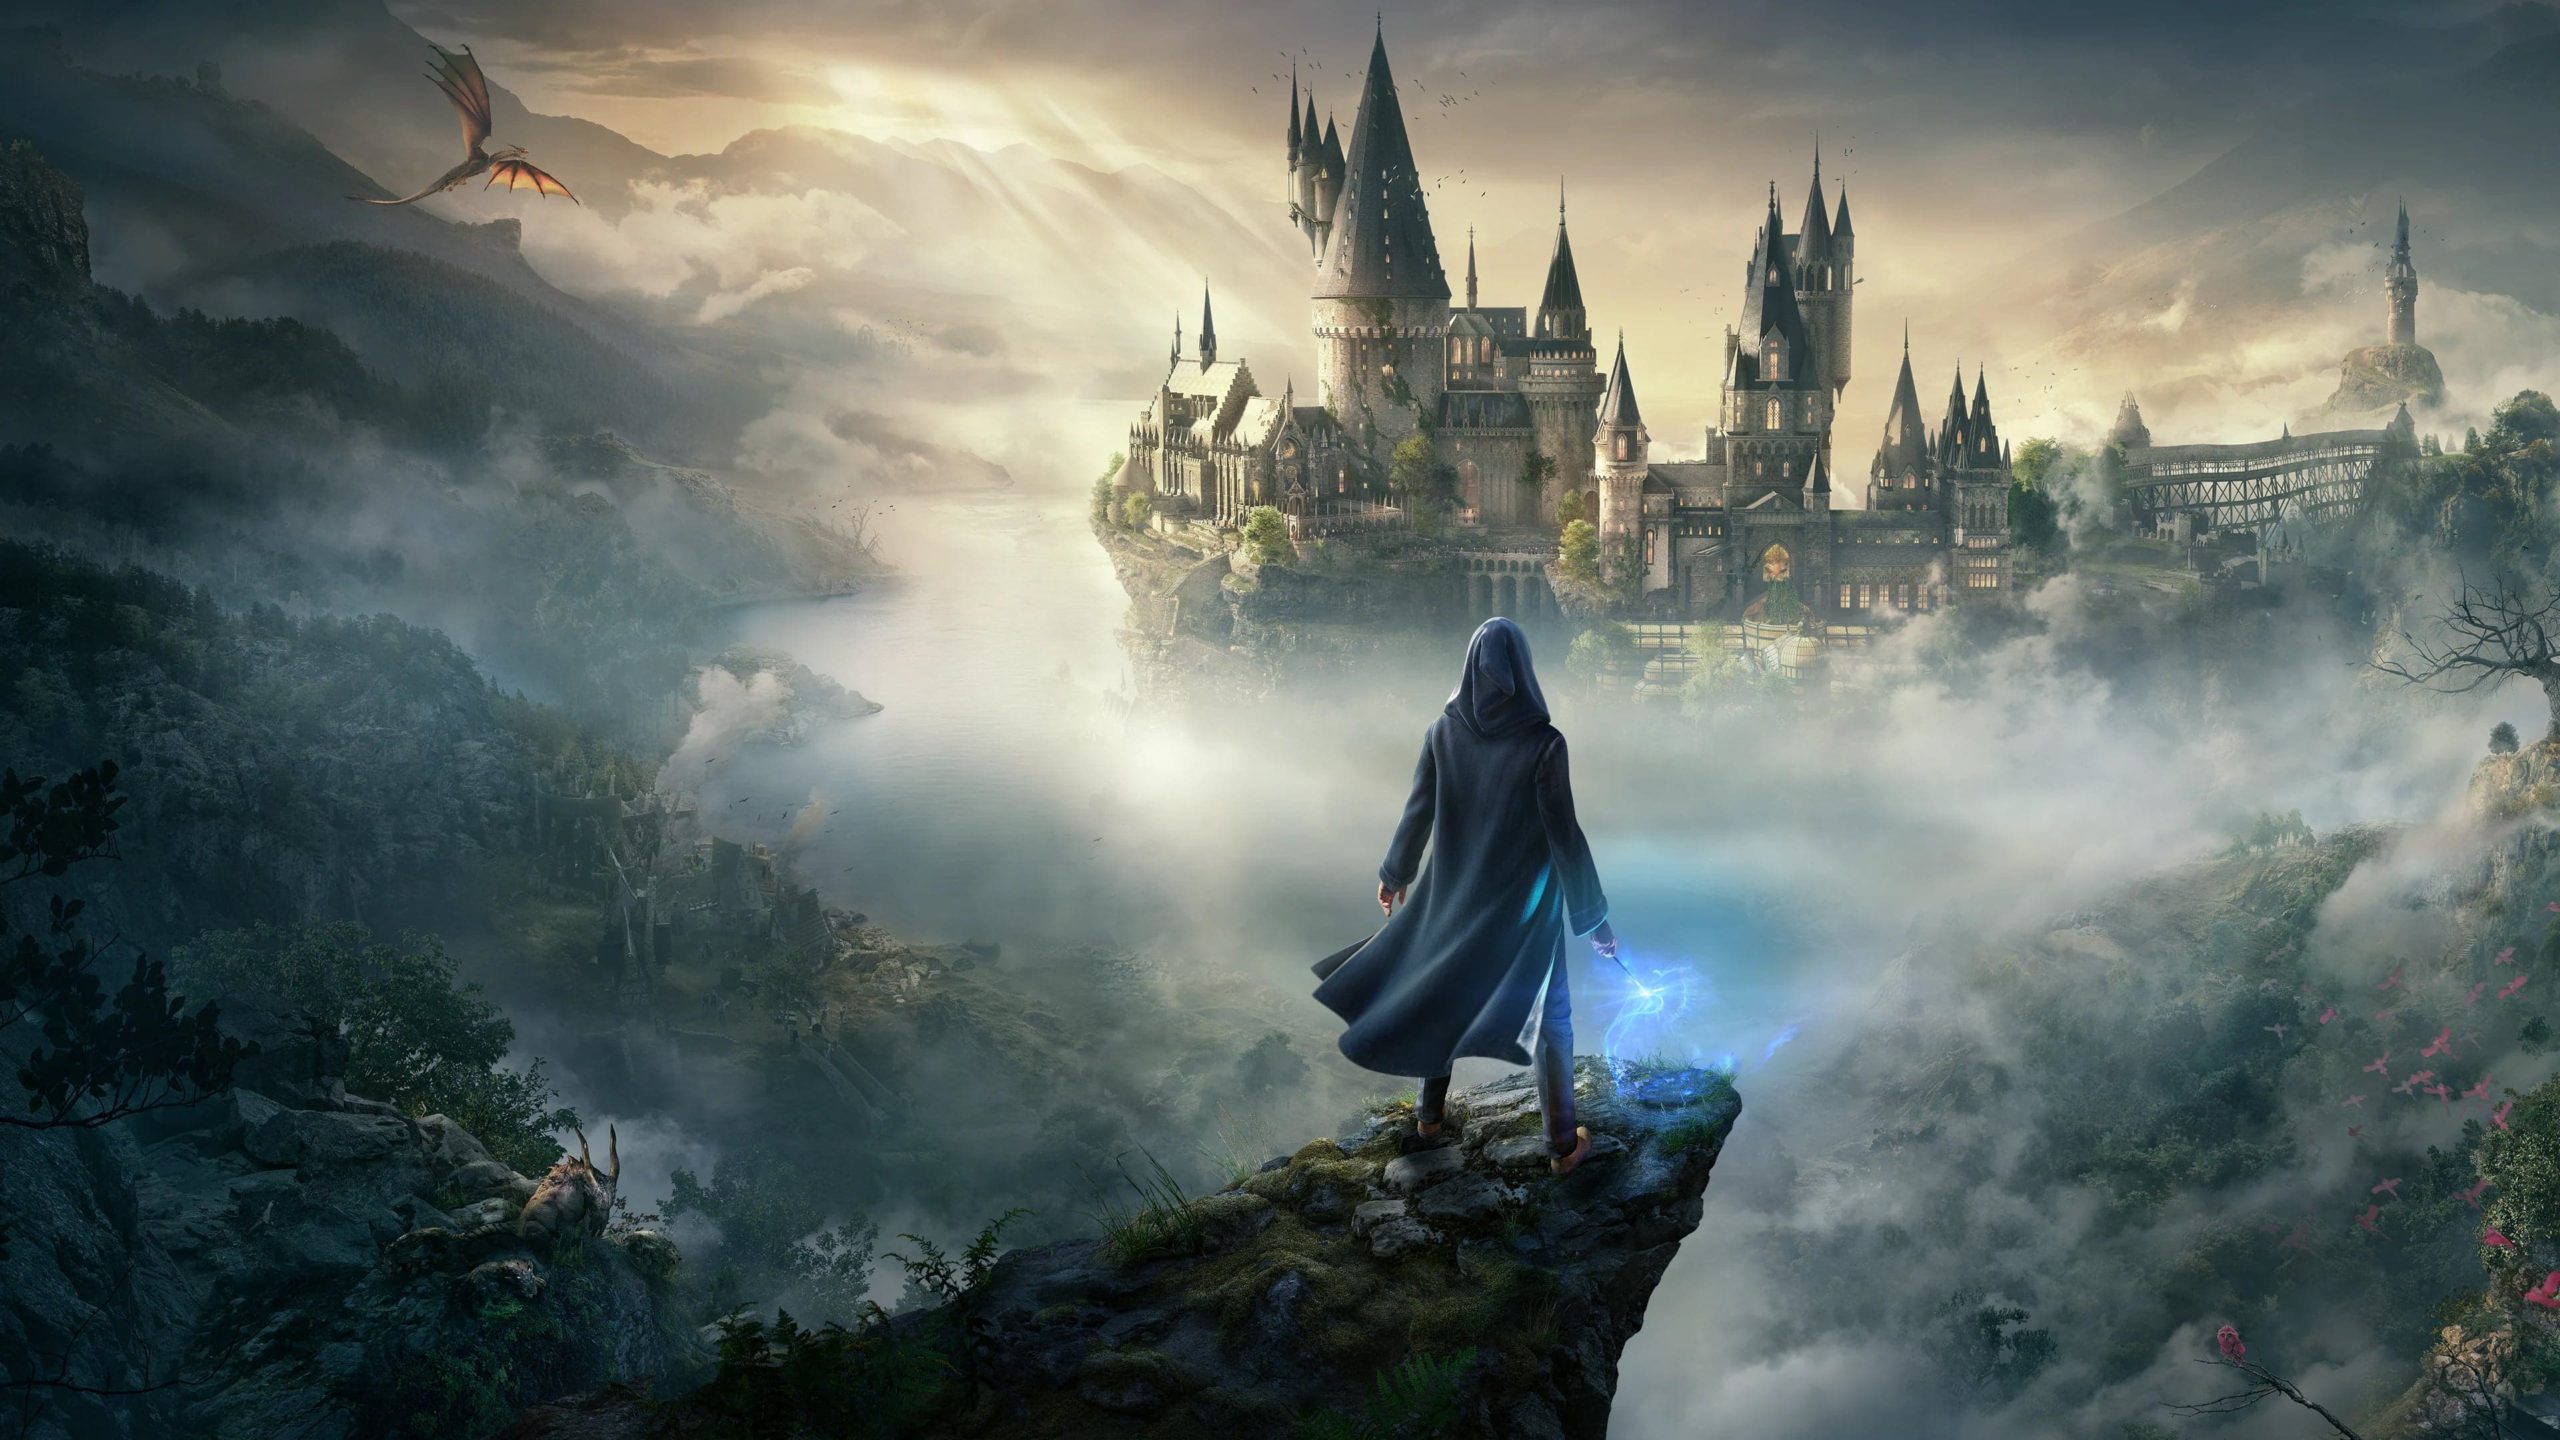 Hogwarts Legacy' alcança 'Elden Ring' com 12 milhões de cópias